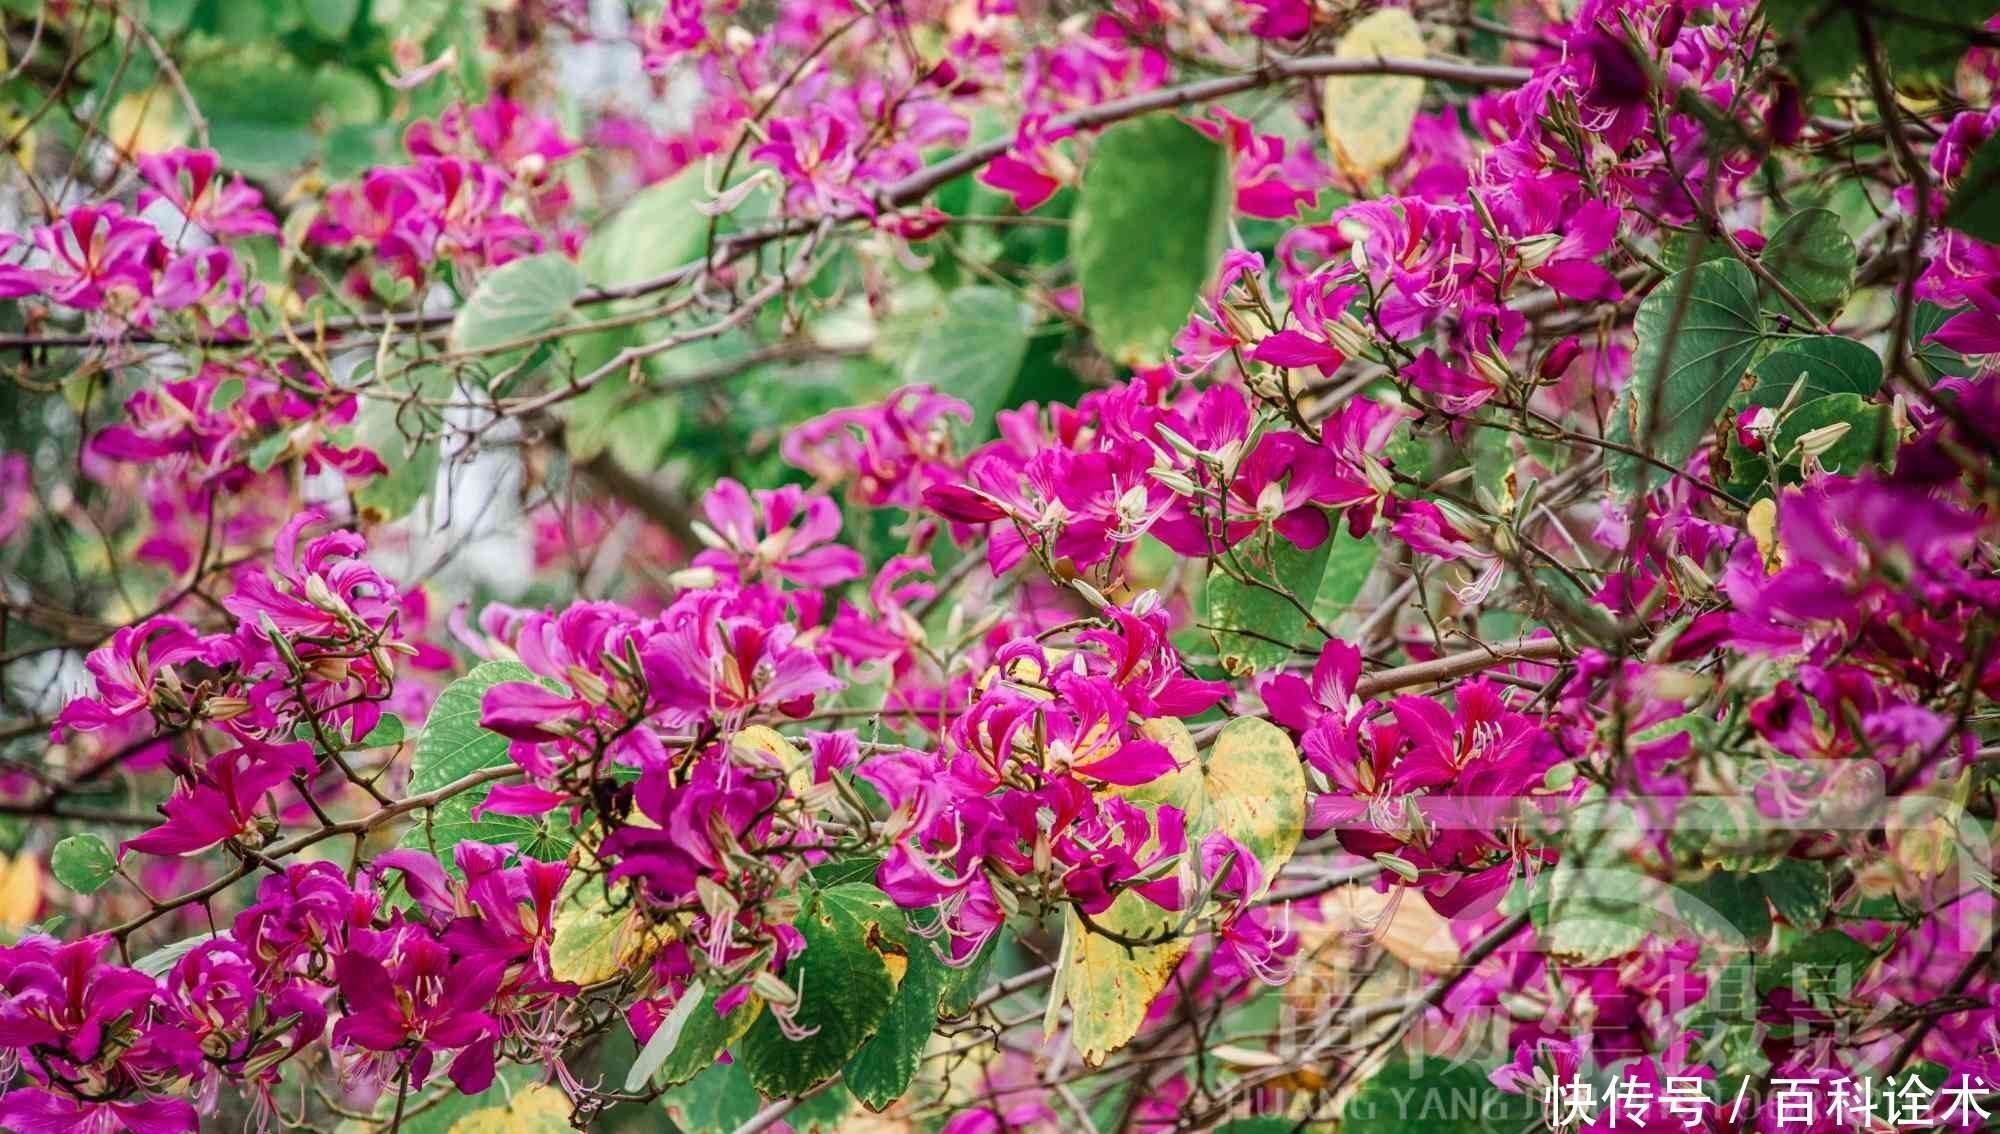 发现初冬美丽的红花羊蹄甲 美艳盛开的花朵非常迷人 花型近伞状 楠木轩